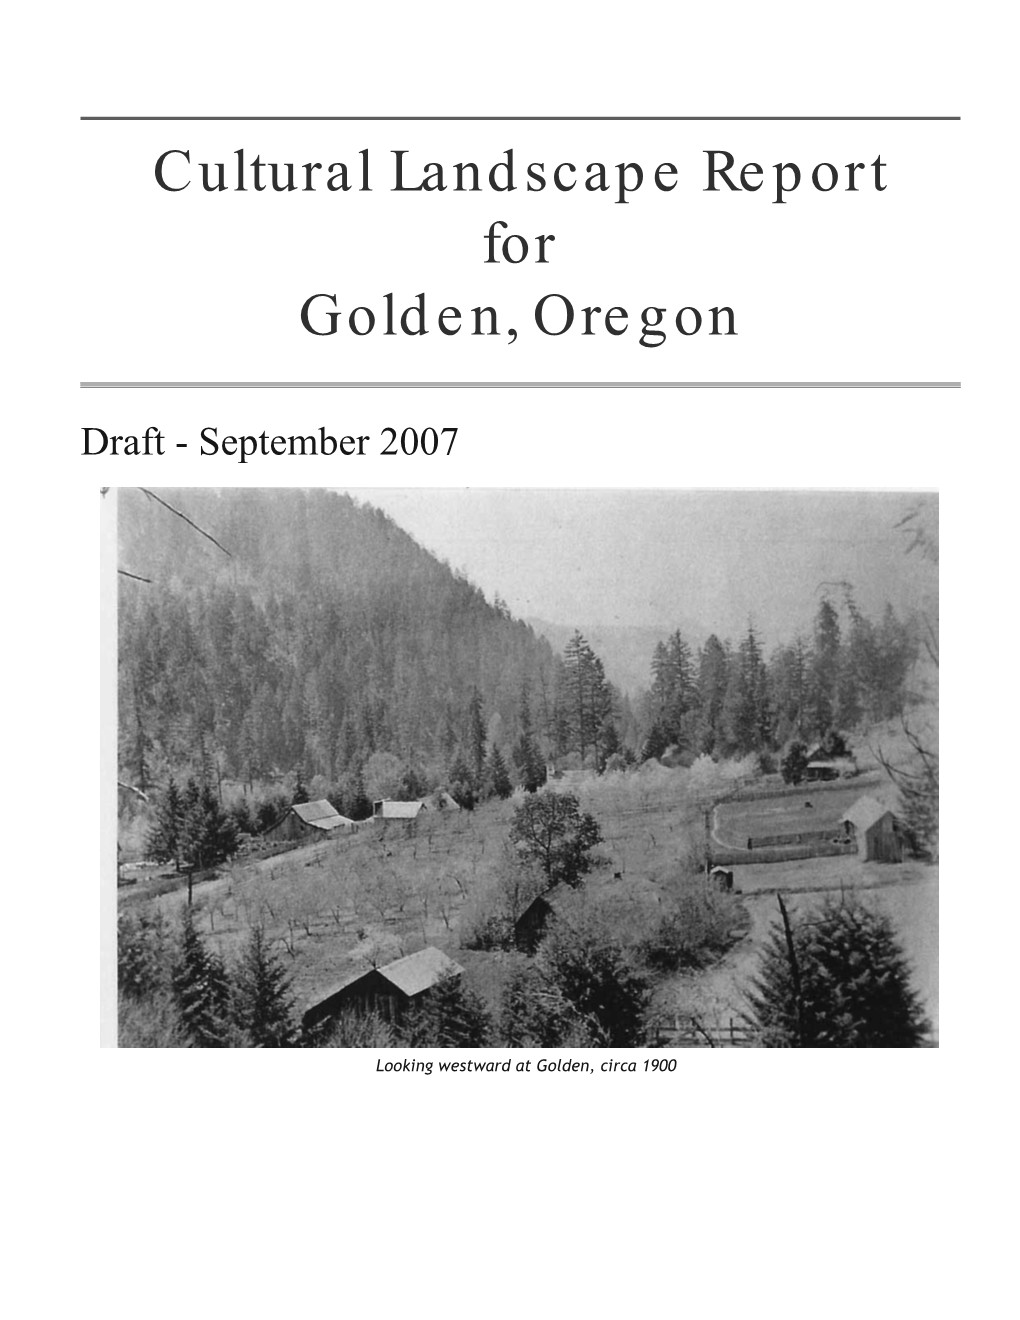 Cultural Landscape Report for Golden, Oregon